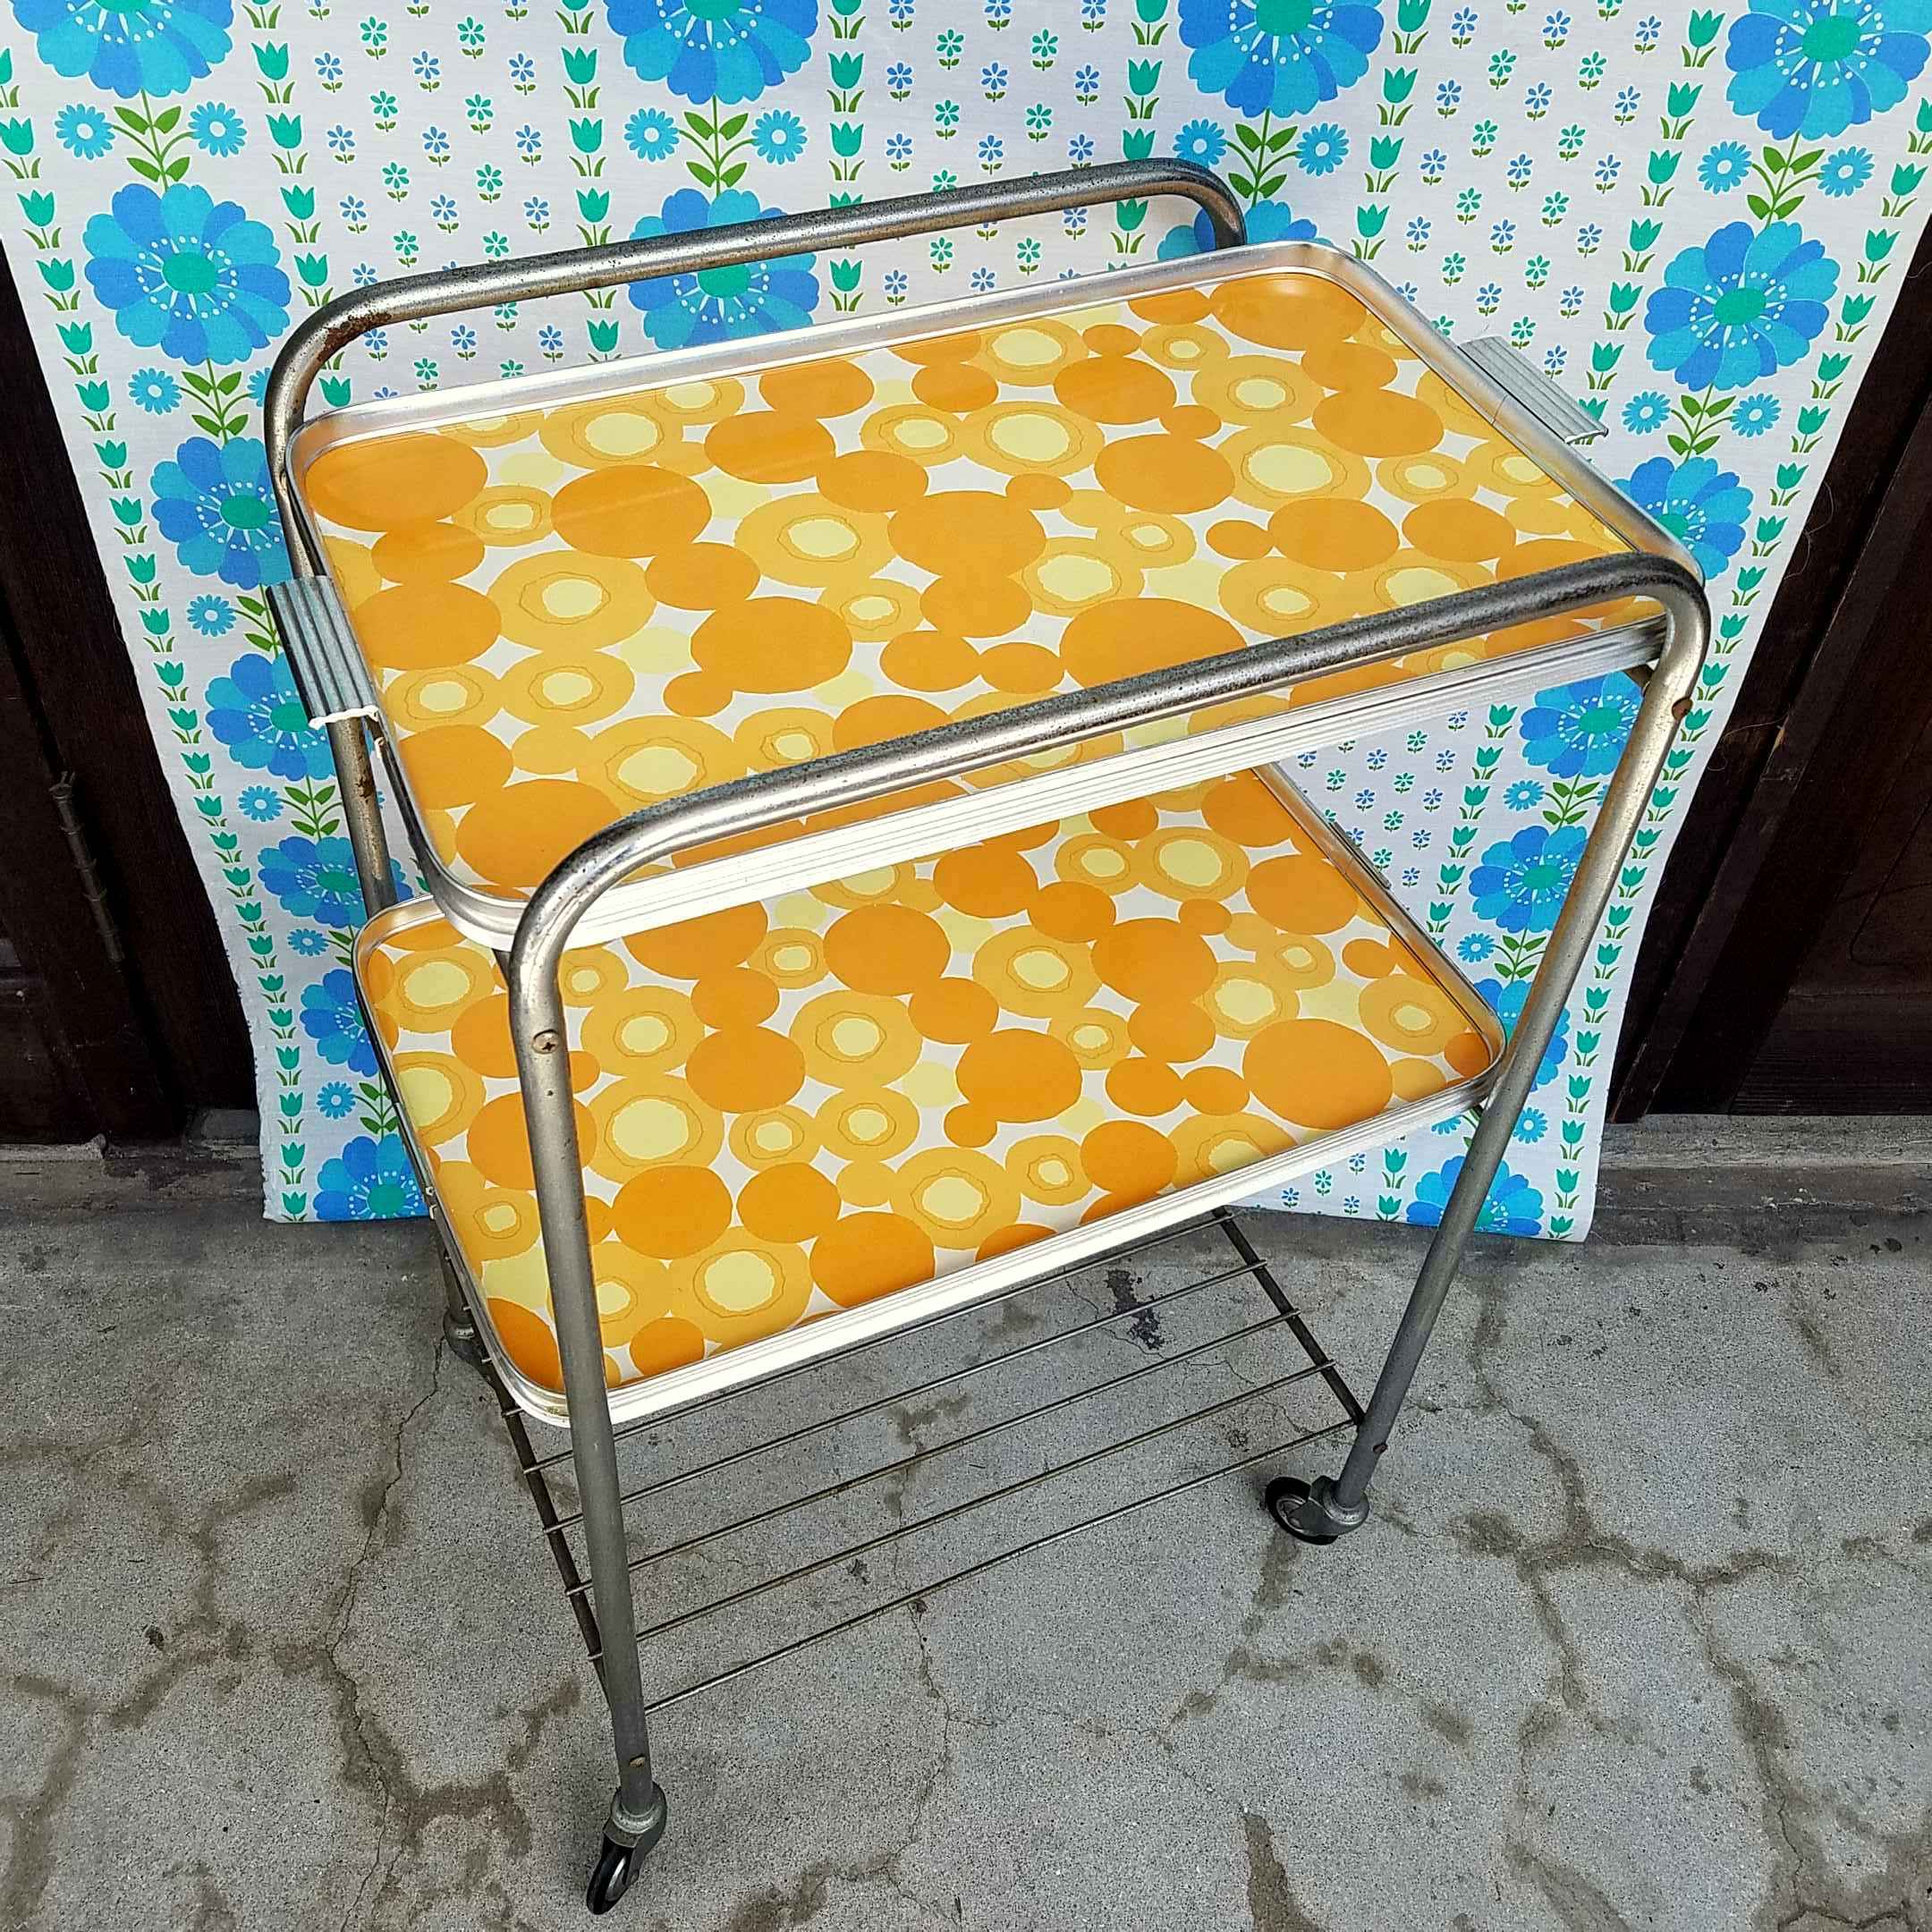 レトロポップなオレンジ色のキッチンワゴン - [Sold Out]過去の販売商品